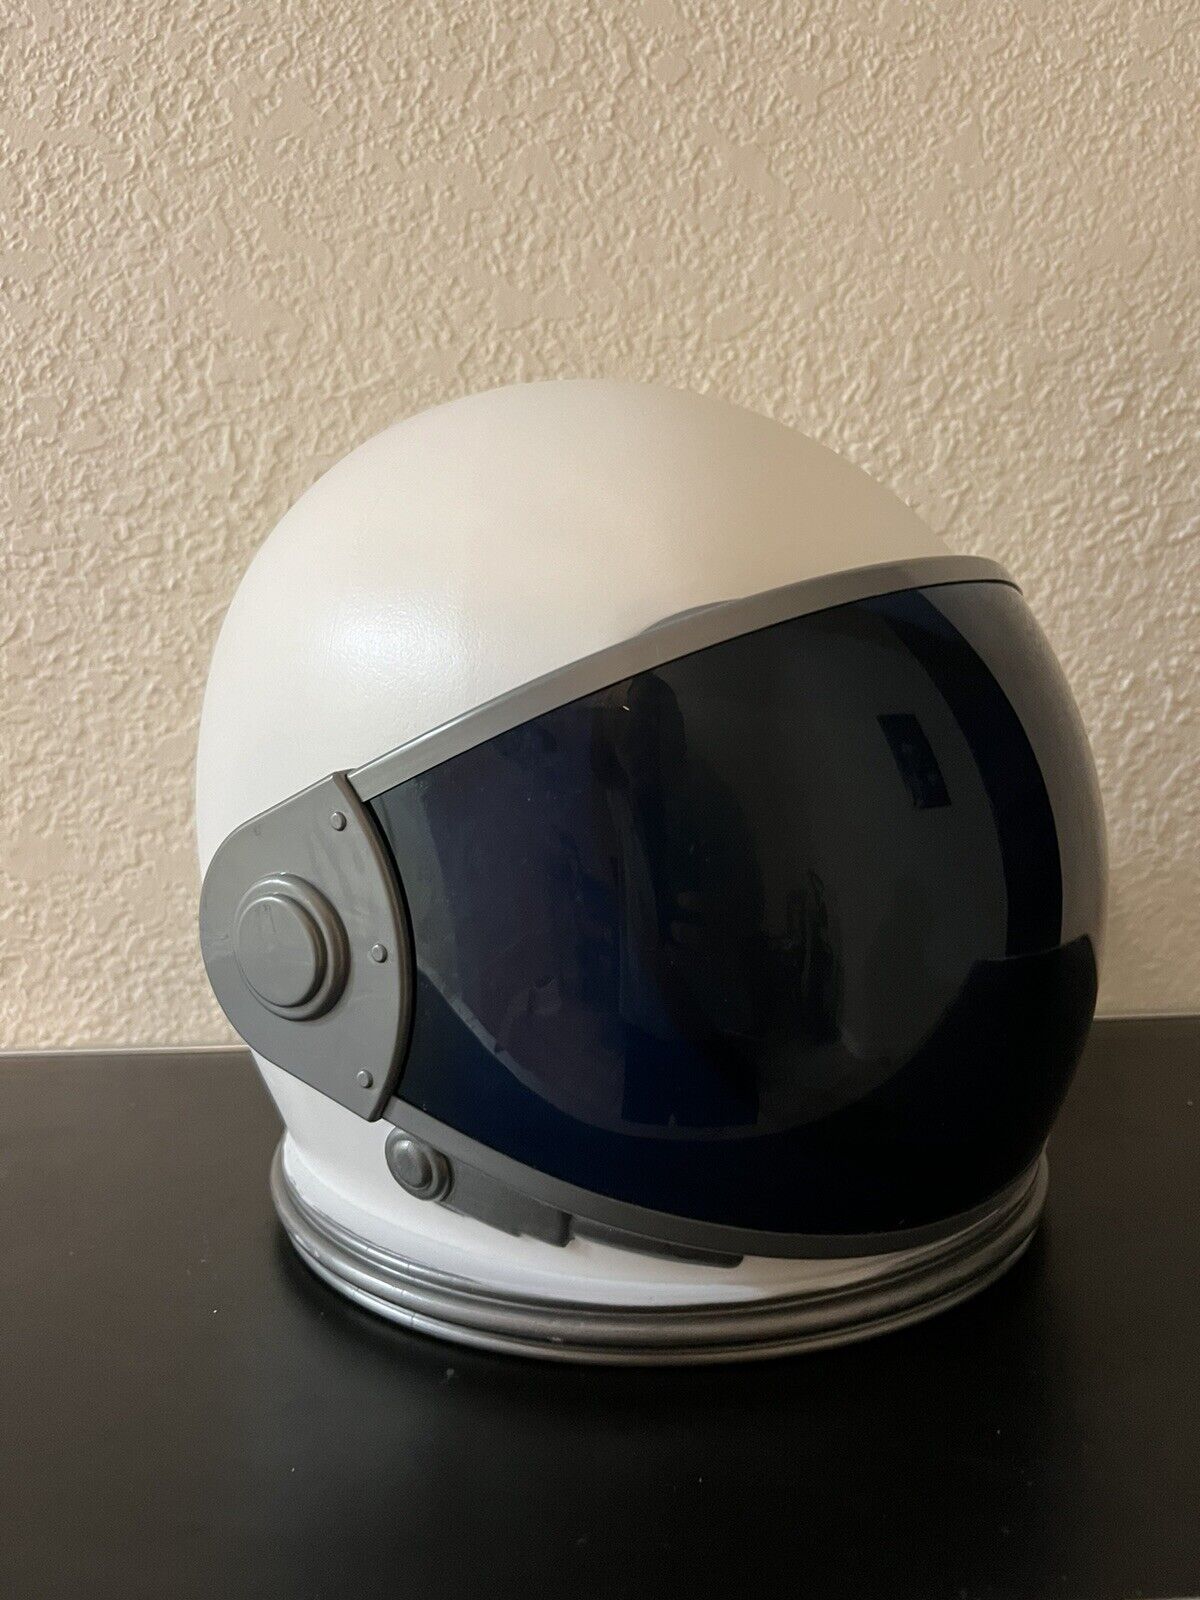 Spirit Halloween Astronaut Helmet / Among Us Cosplay Helmet Adult